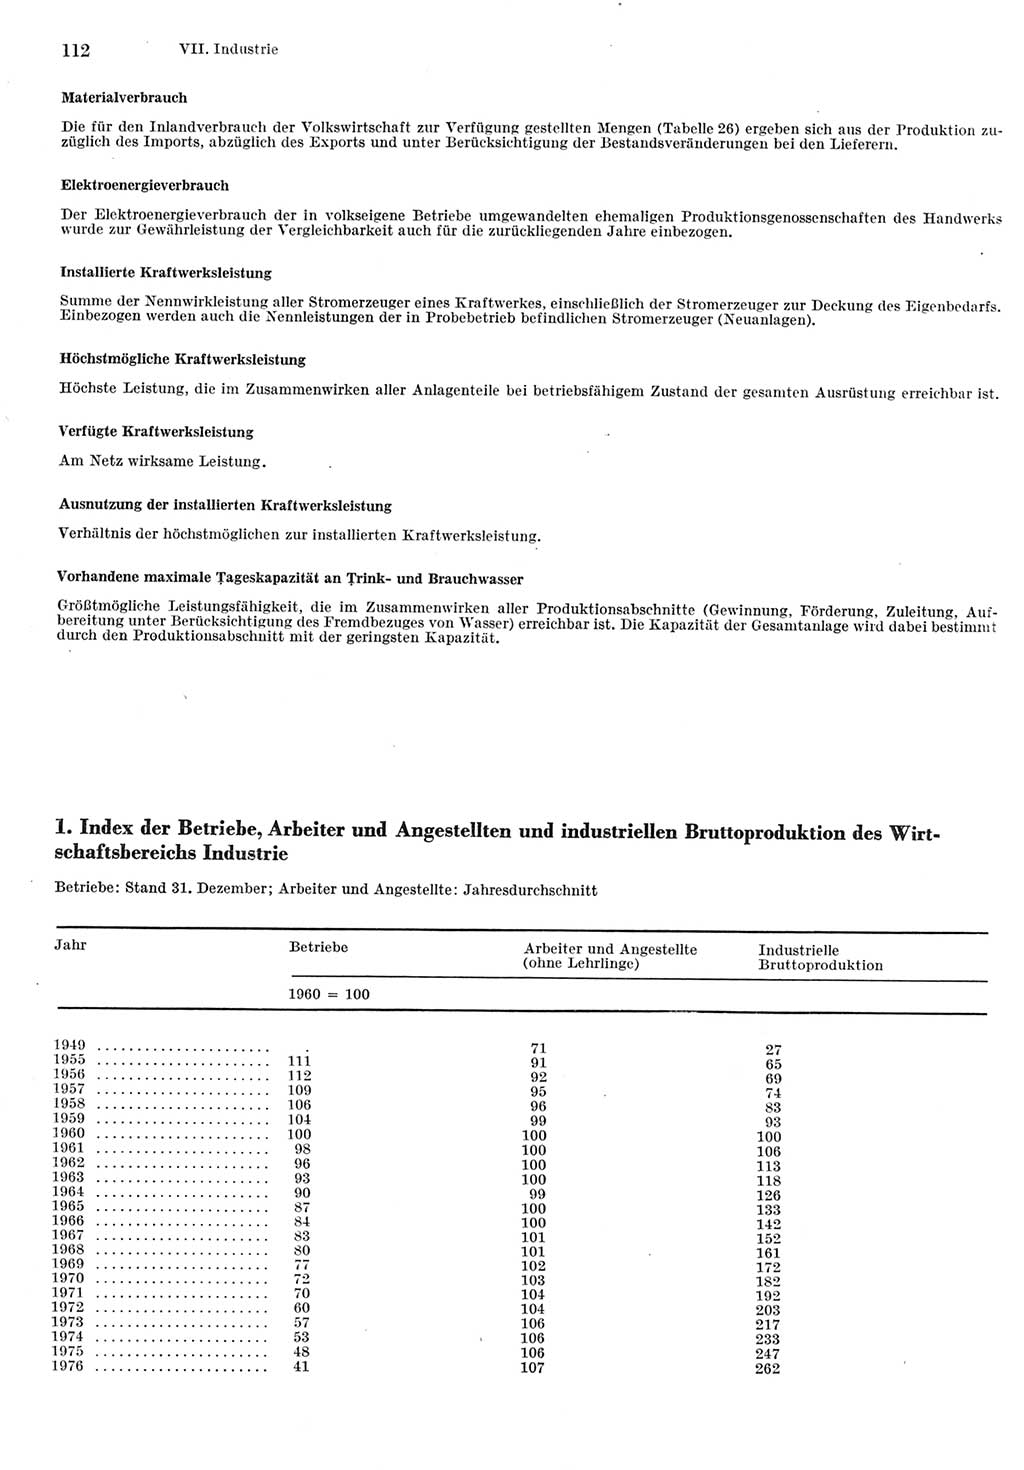 Statistisches Jahrbuch der Deutschen Demokratischen Republik (DDR) 1977, Seite 112 (Stat. Jb. DDR 1977, S. 112)